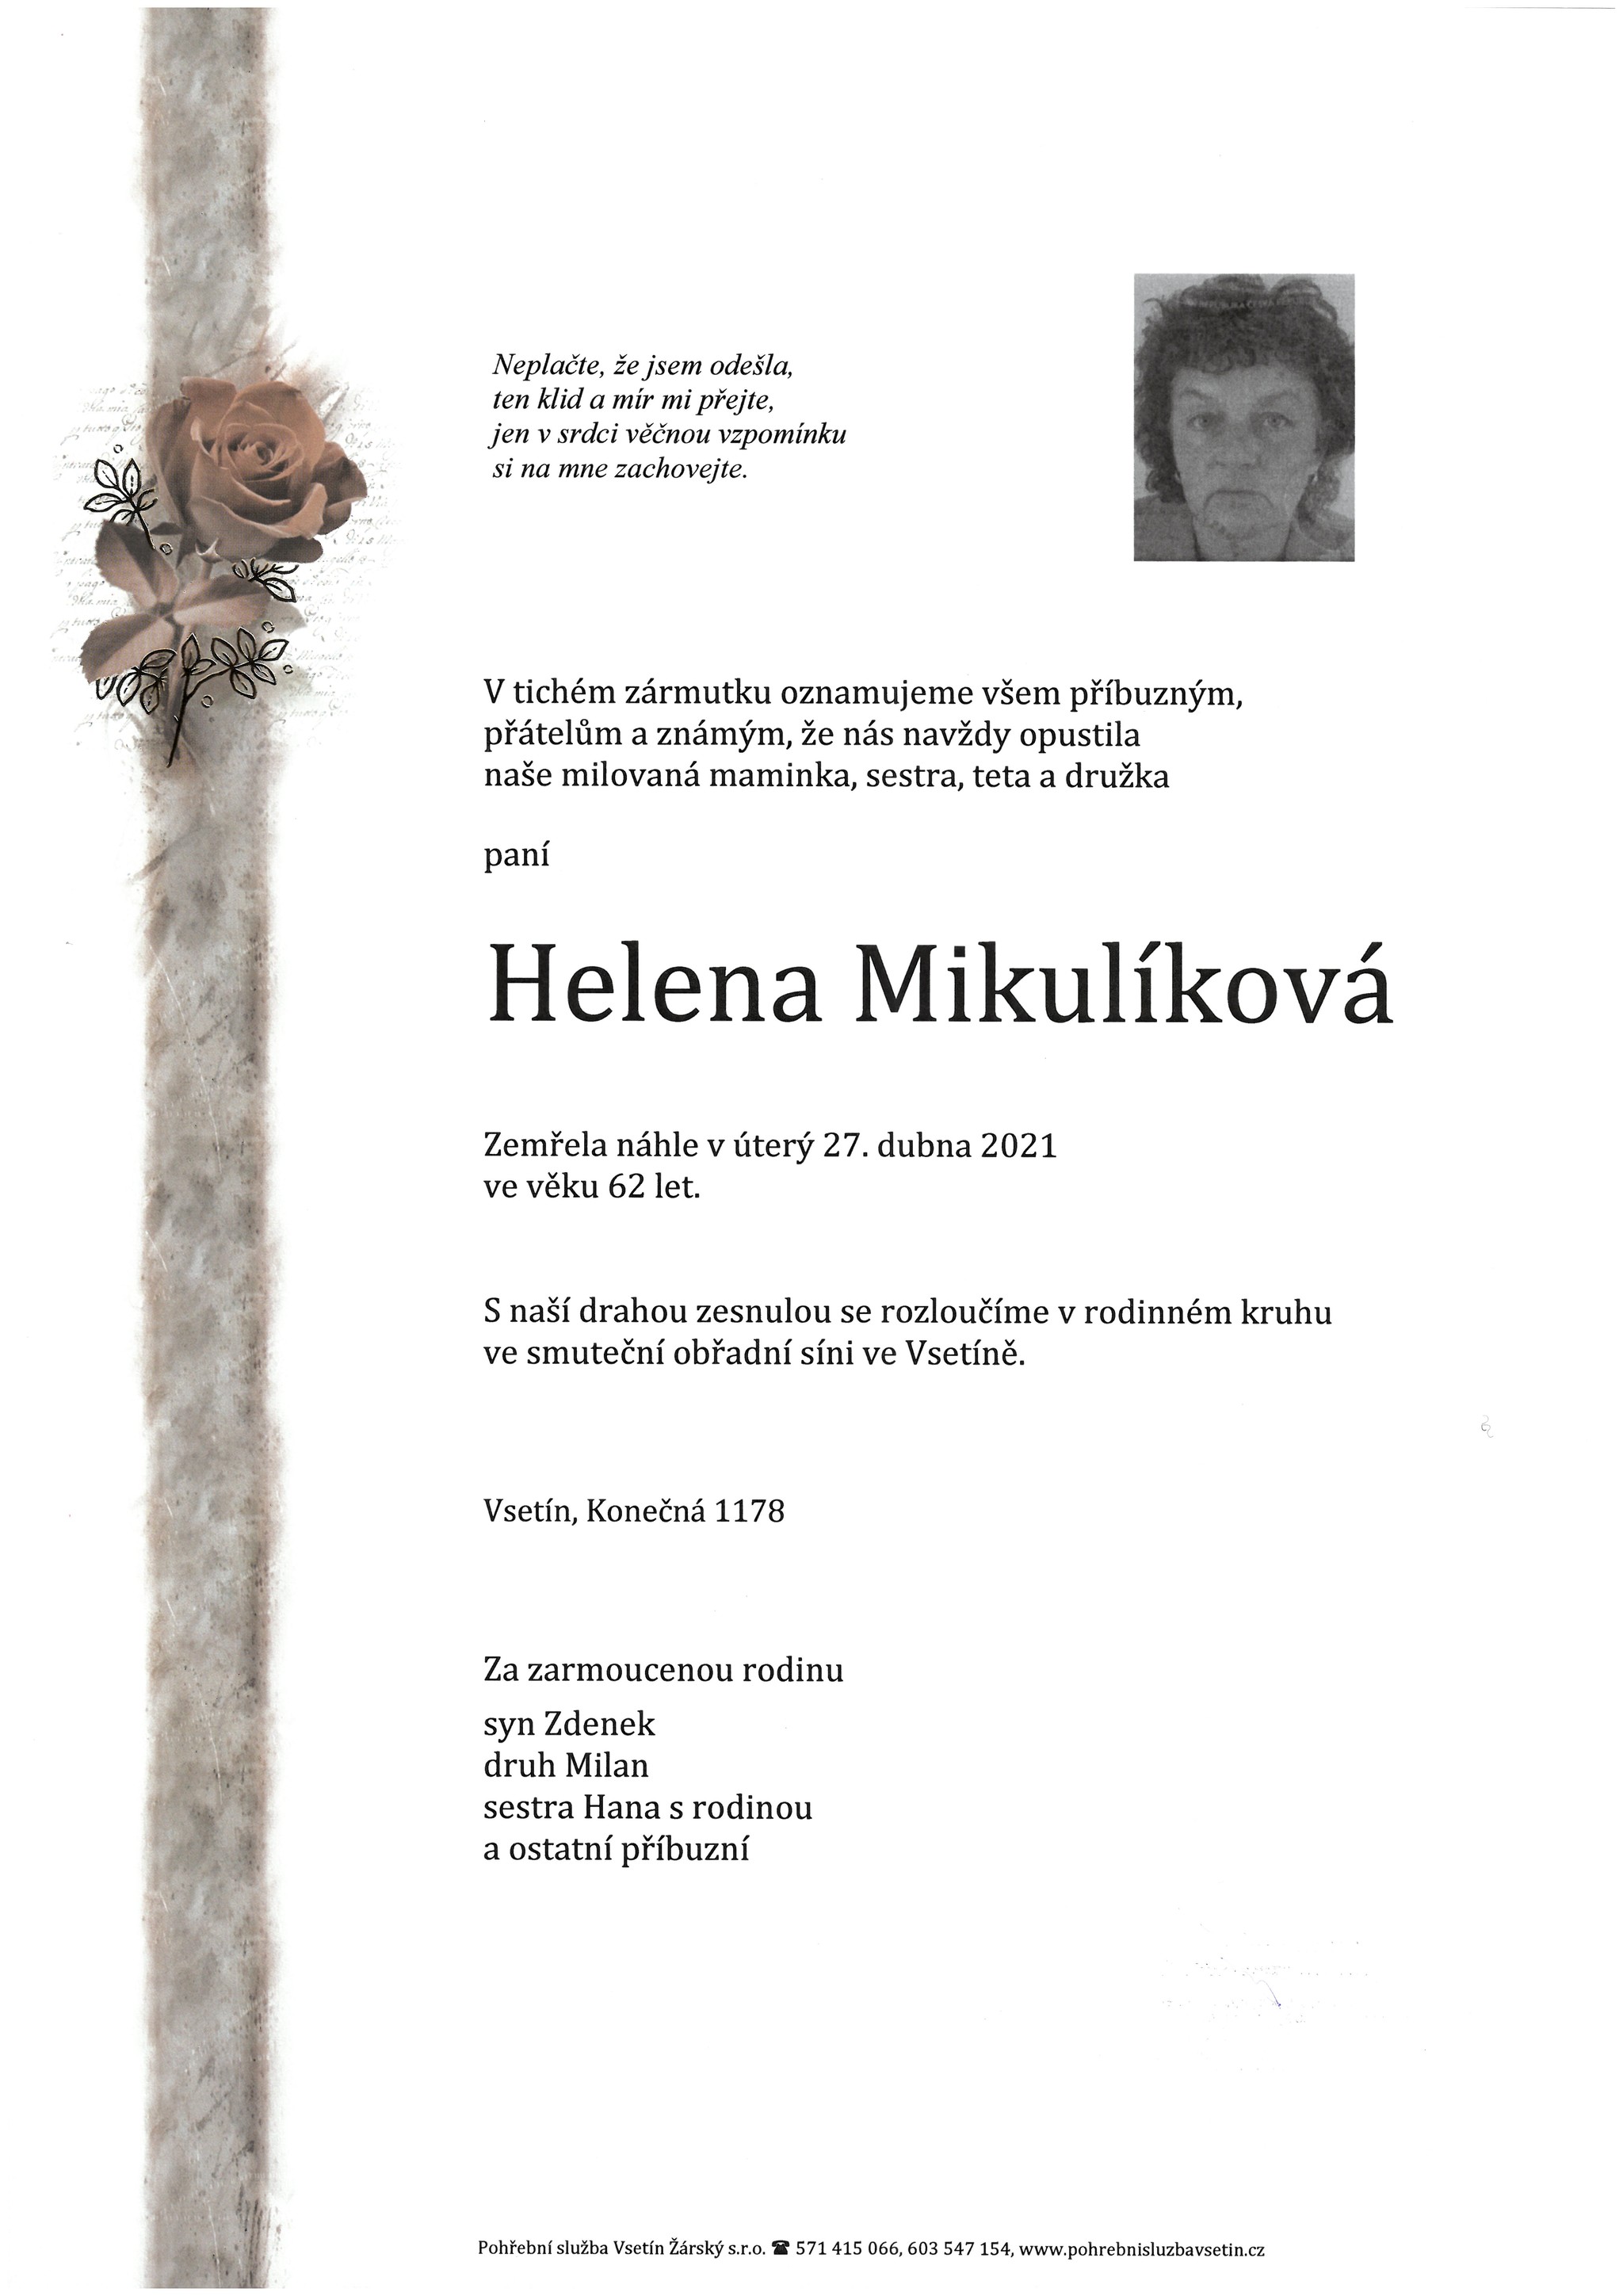 Helena Mikulíková